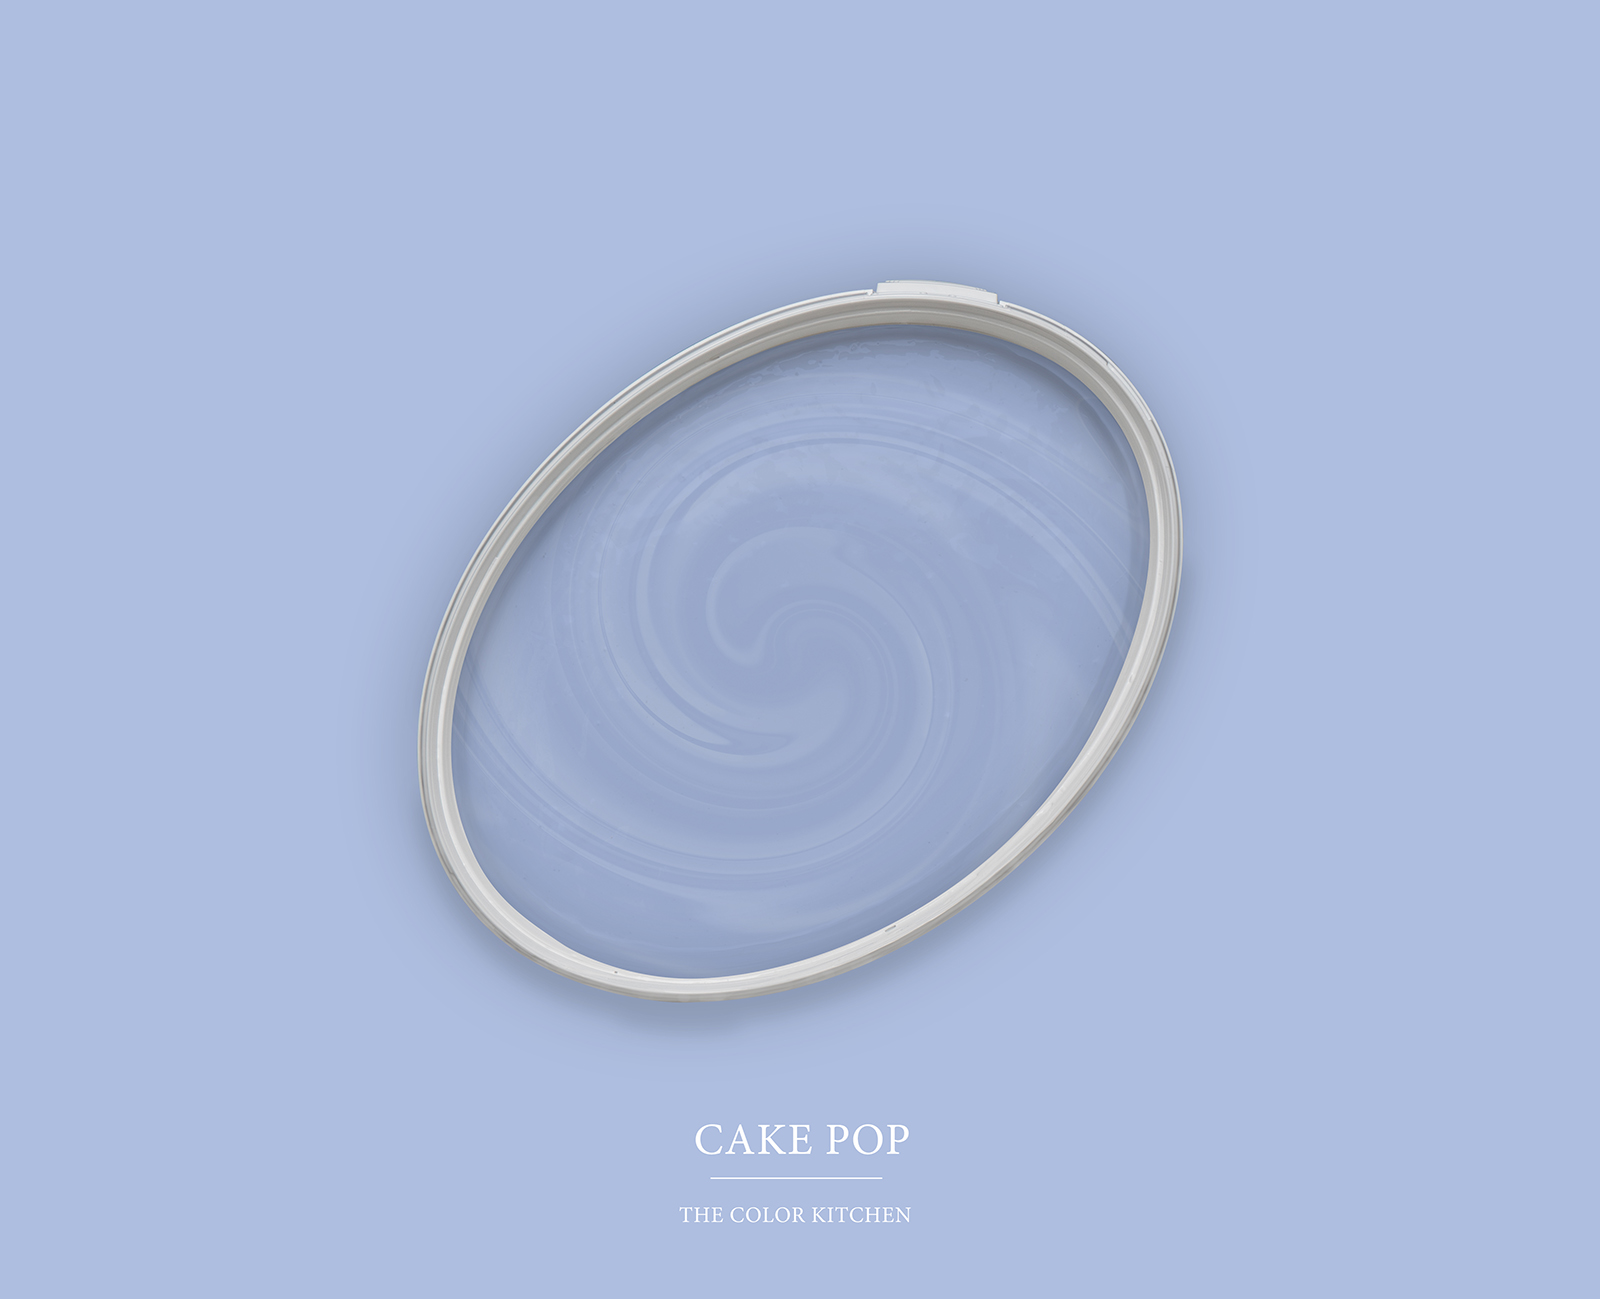         Wandfarbe TCK3006 »Cake Pop« in lieblichem Violett – 2,5 Liter
    